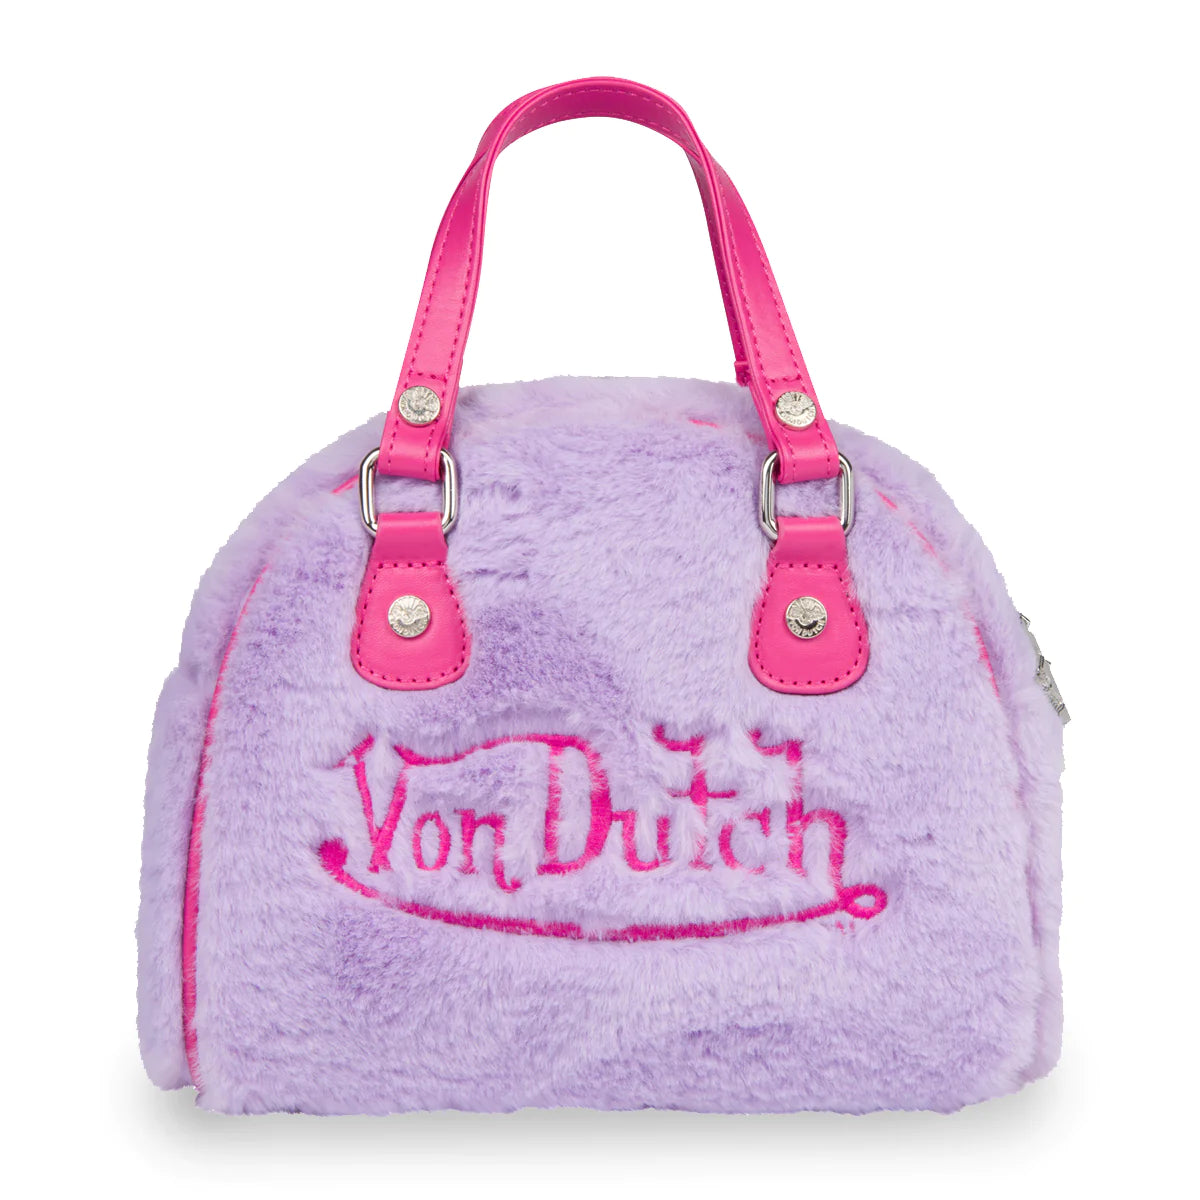 Hot Pink Cheetah Bowling Bag Small - Von Dutch